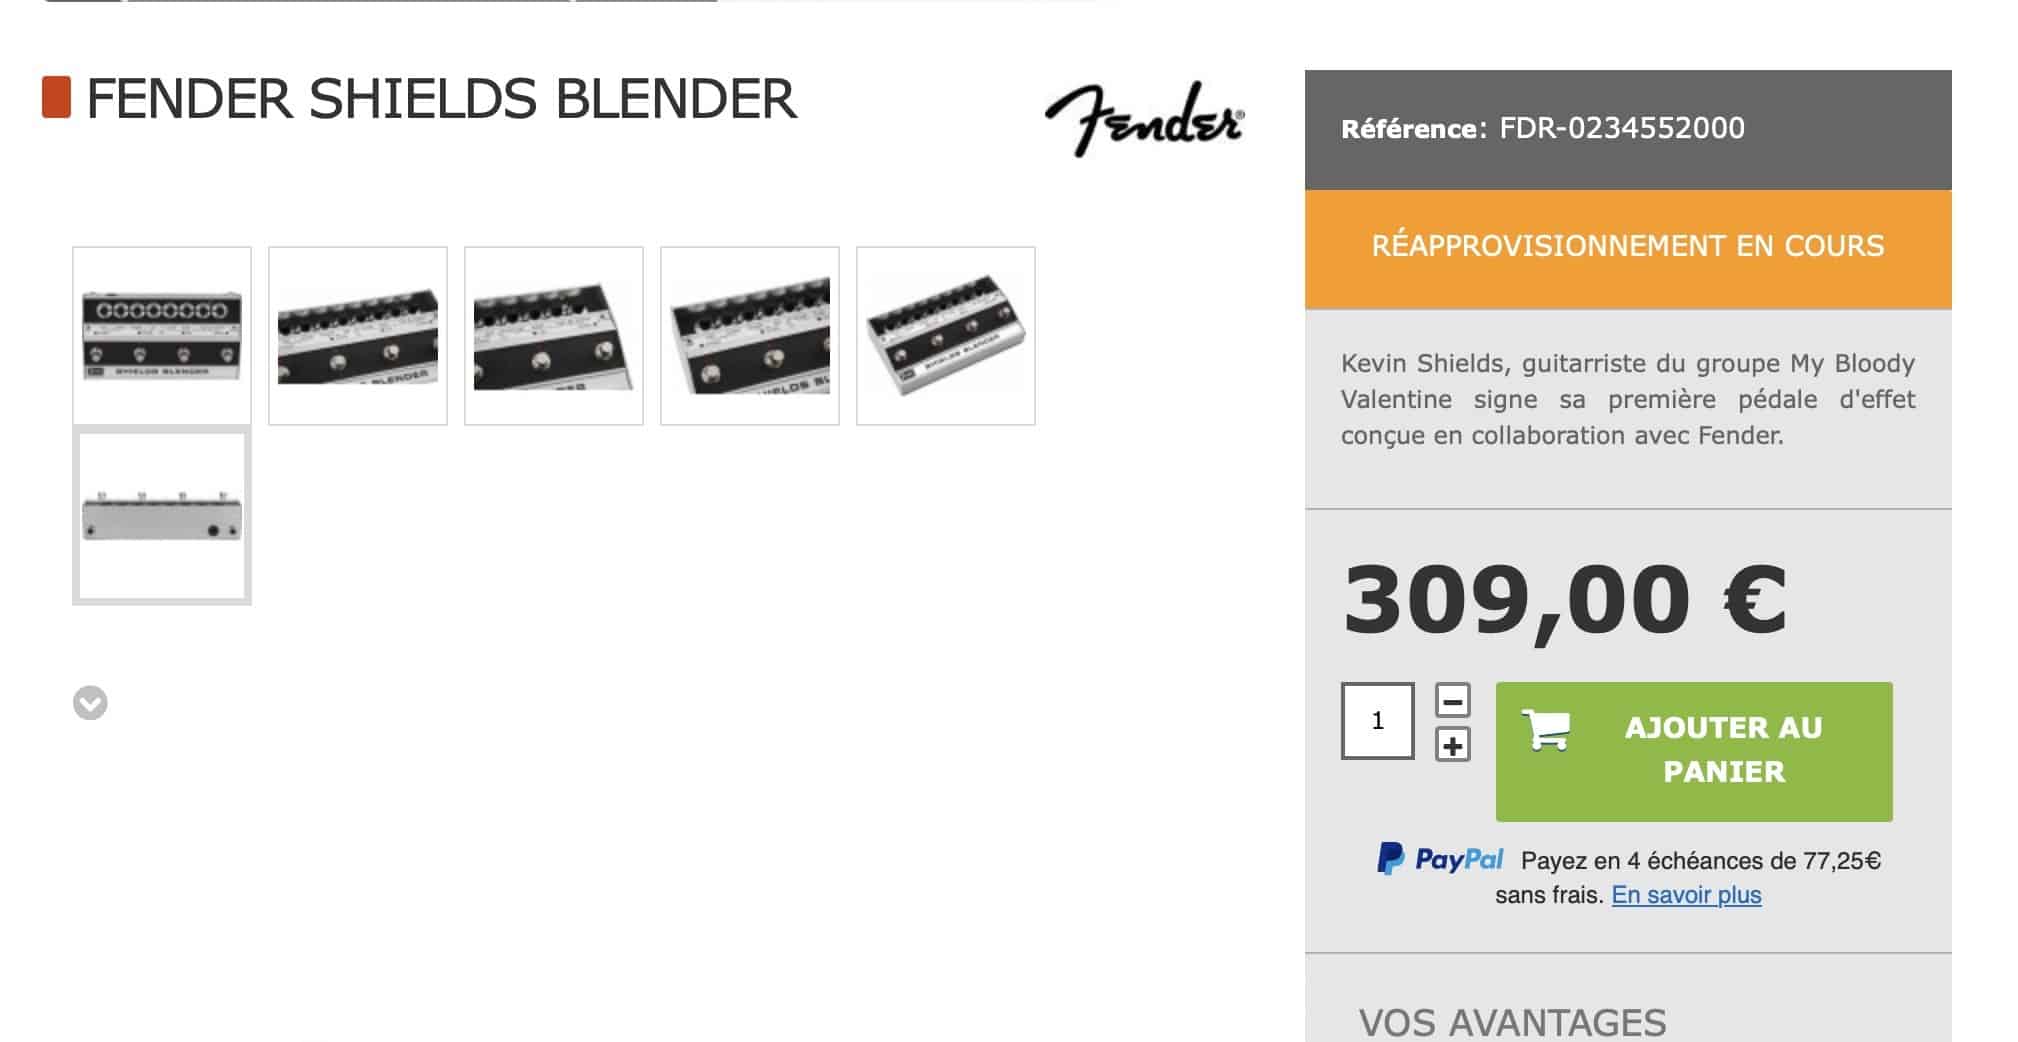 Standard Fender Shields Blender for a lot less